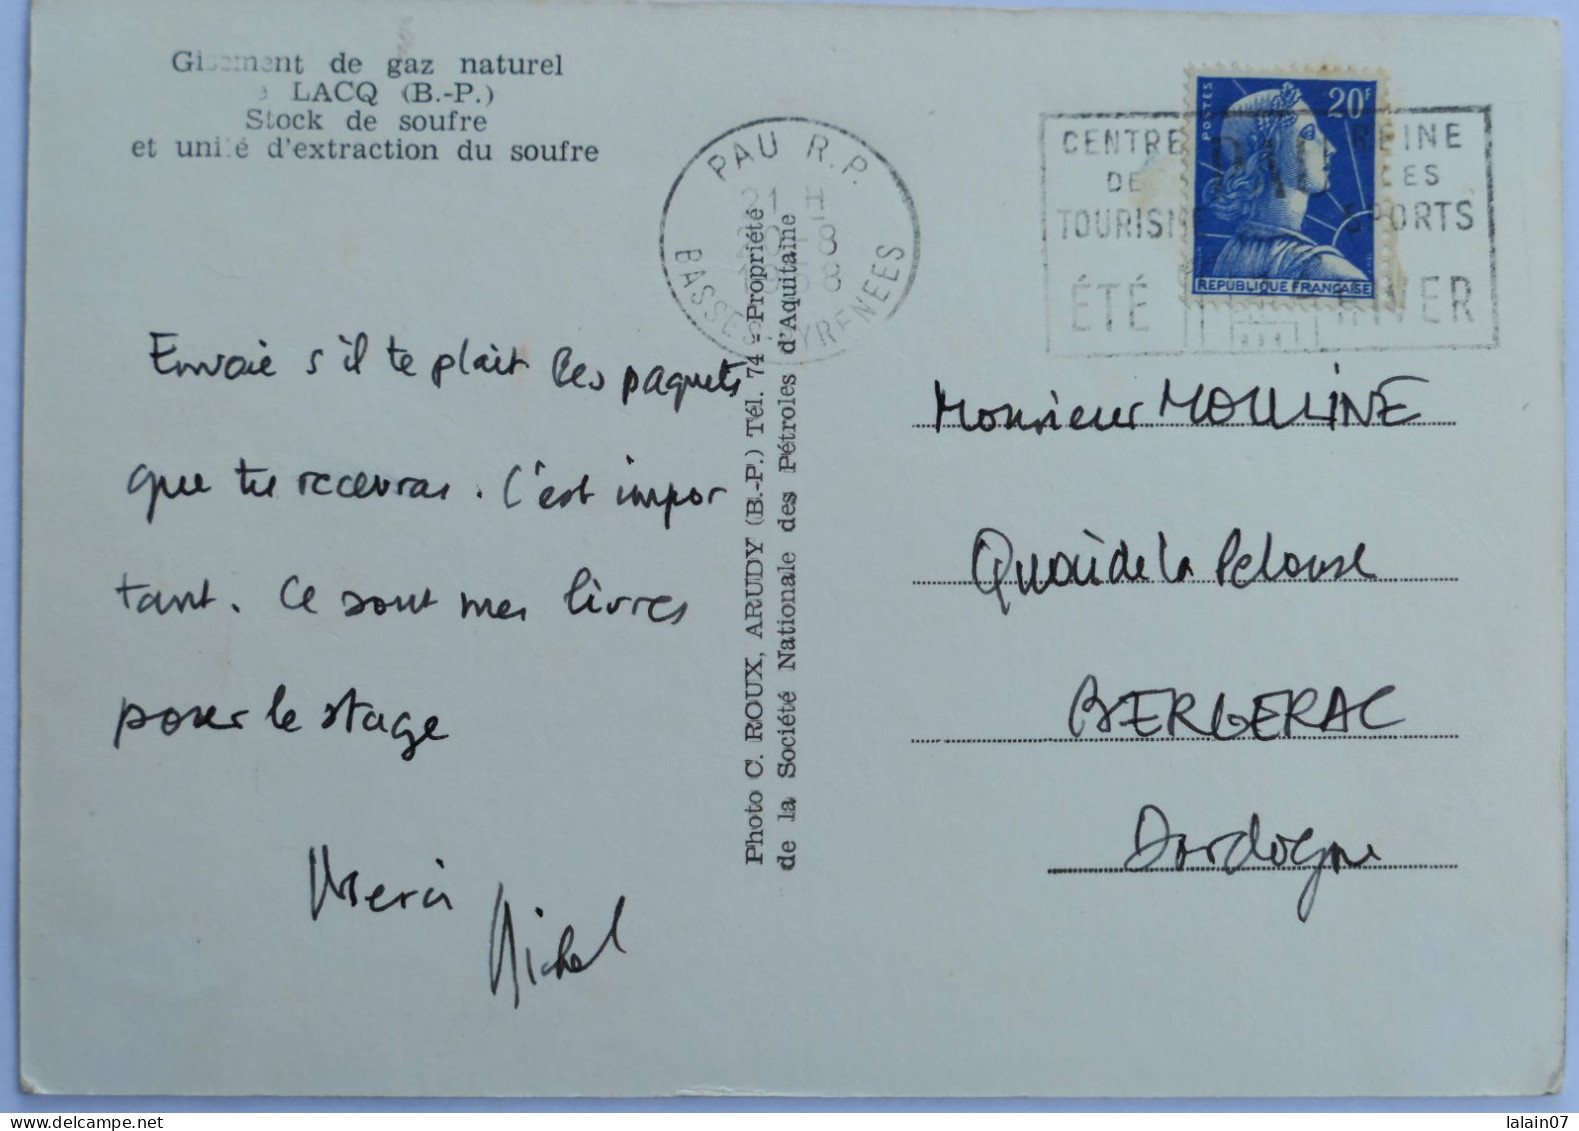 Carte Postale : 64 : LACQ : Stock De Soufre Et Unité D'Extraction Du Soufre, Timbre En 1958 - Lacq